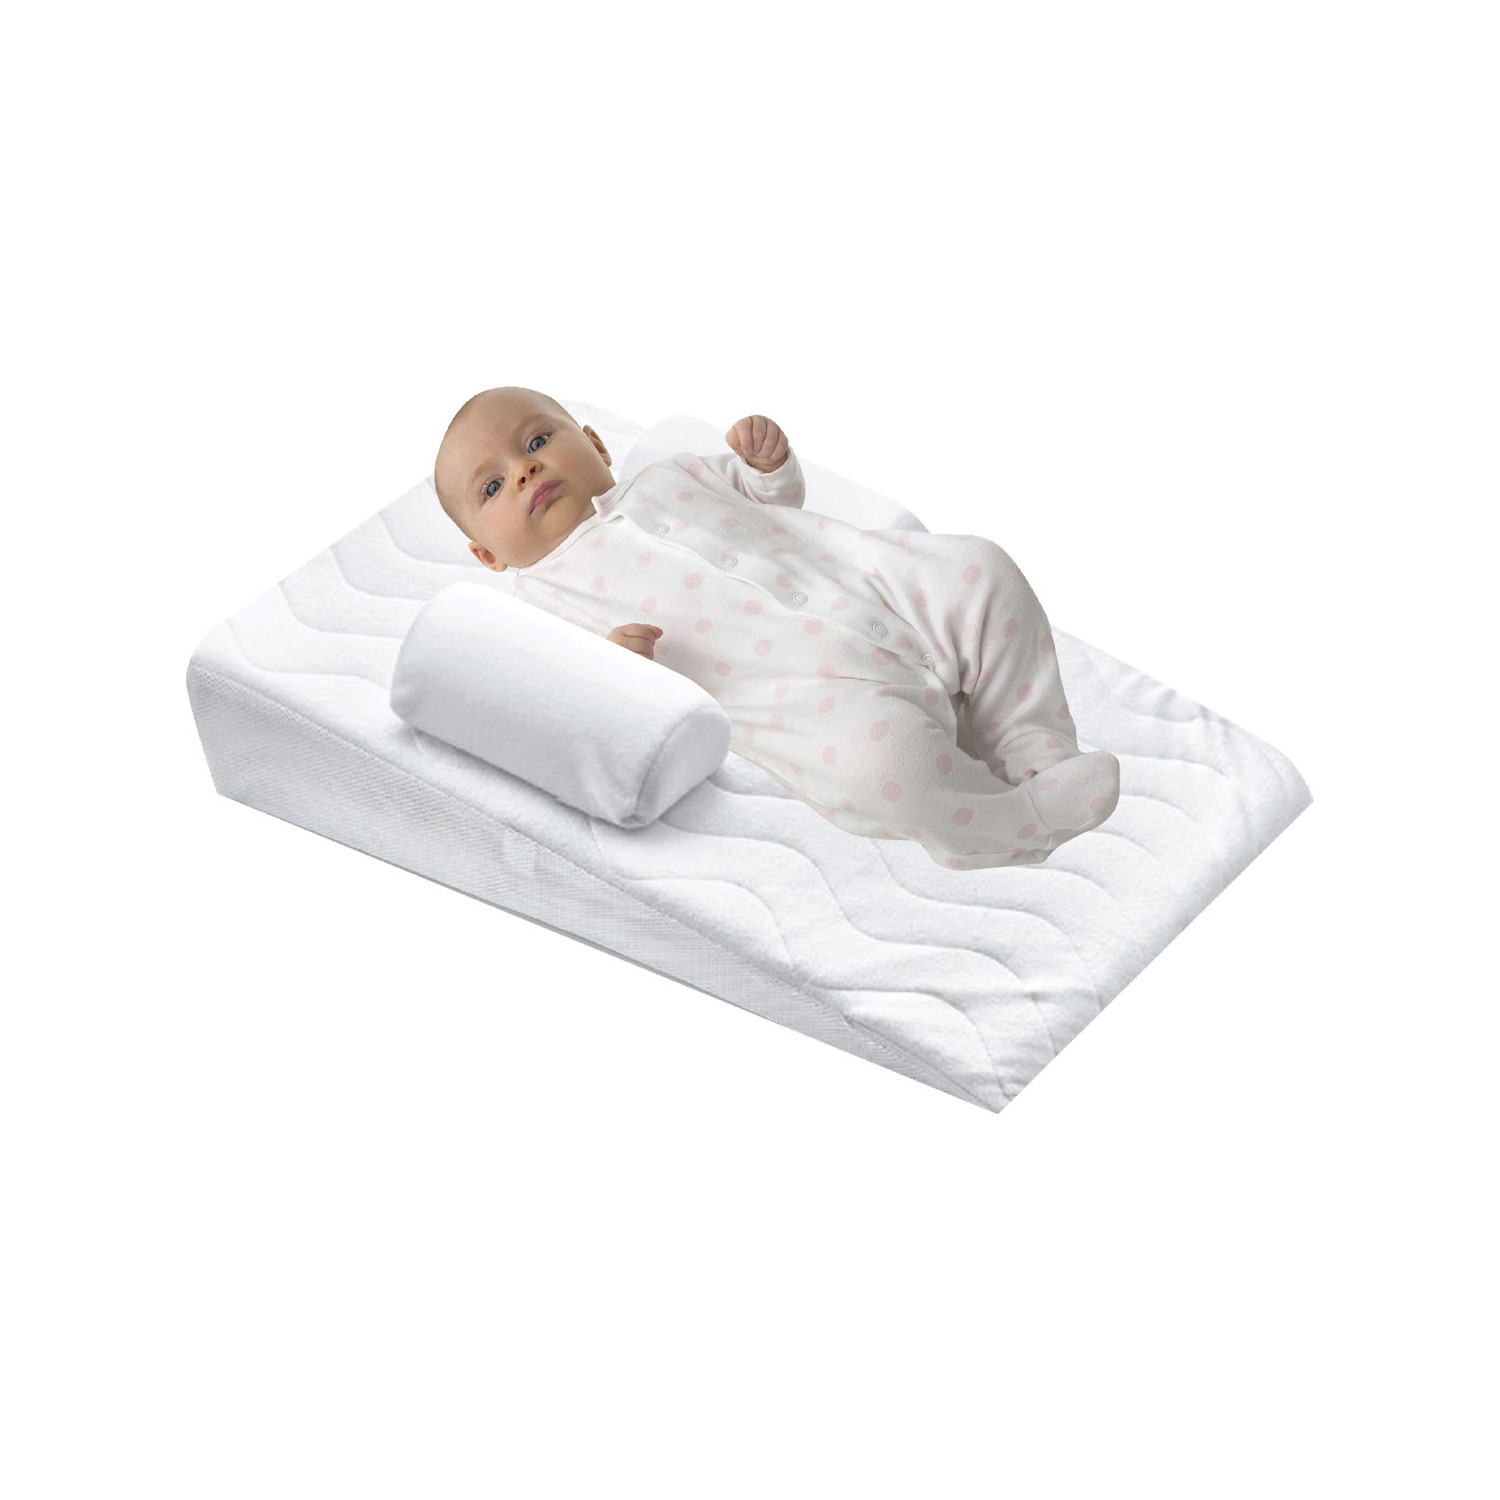 baby bed bebek comfort reflu yatagi fiyati taksit secenekleri